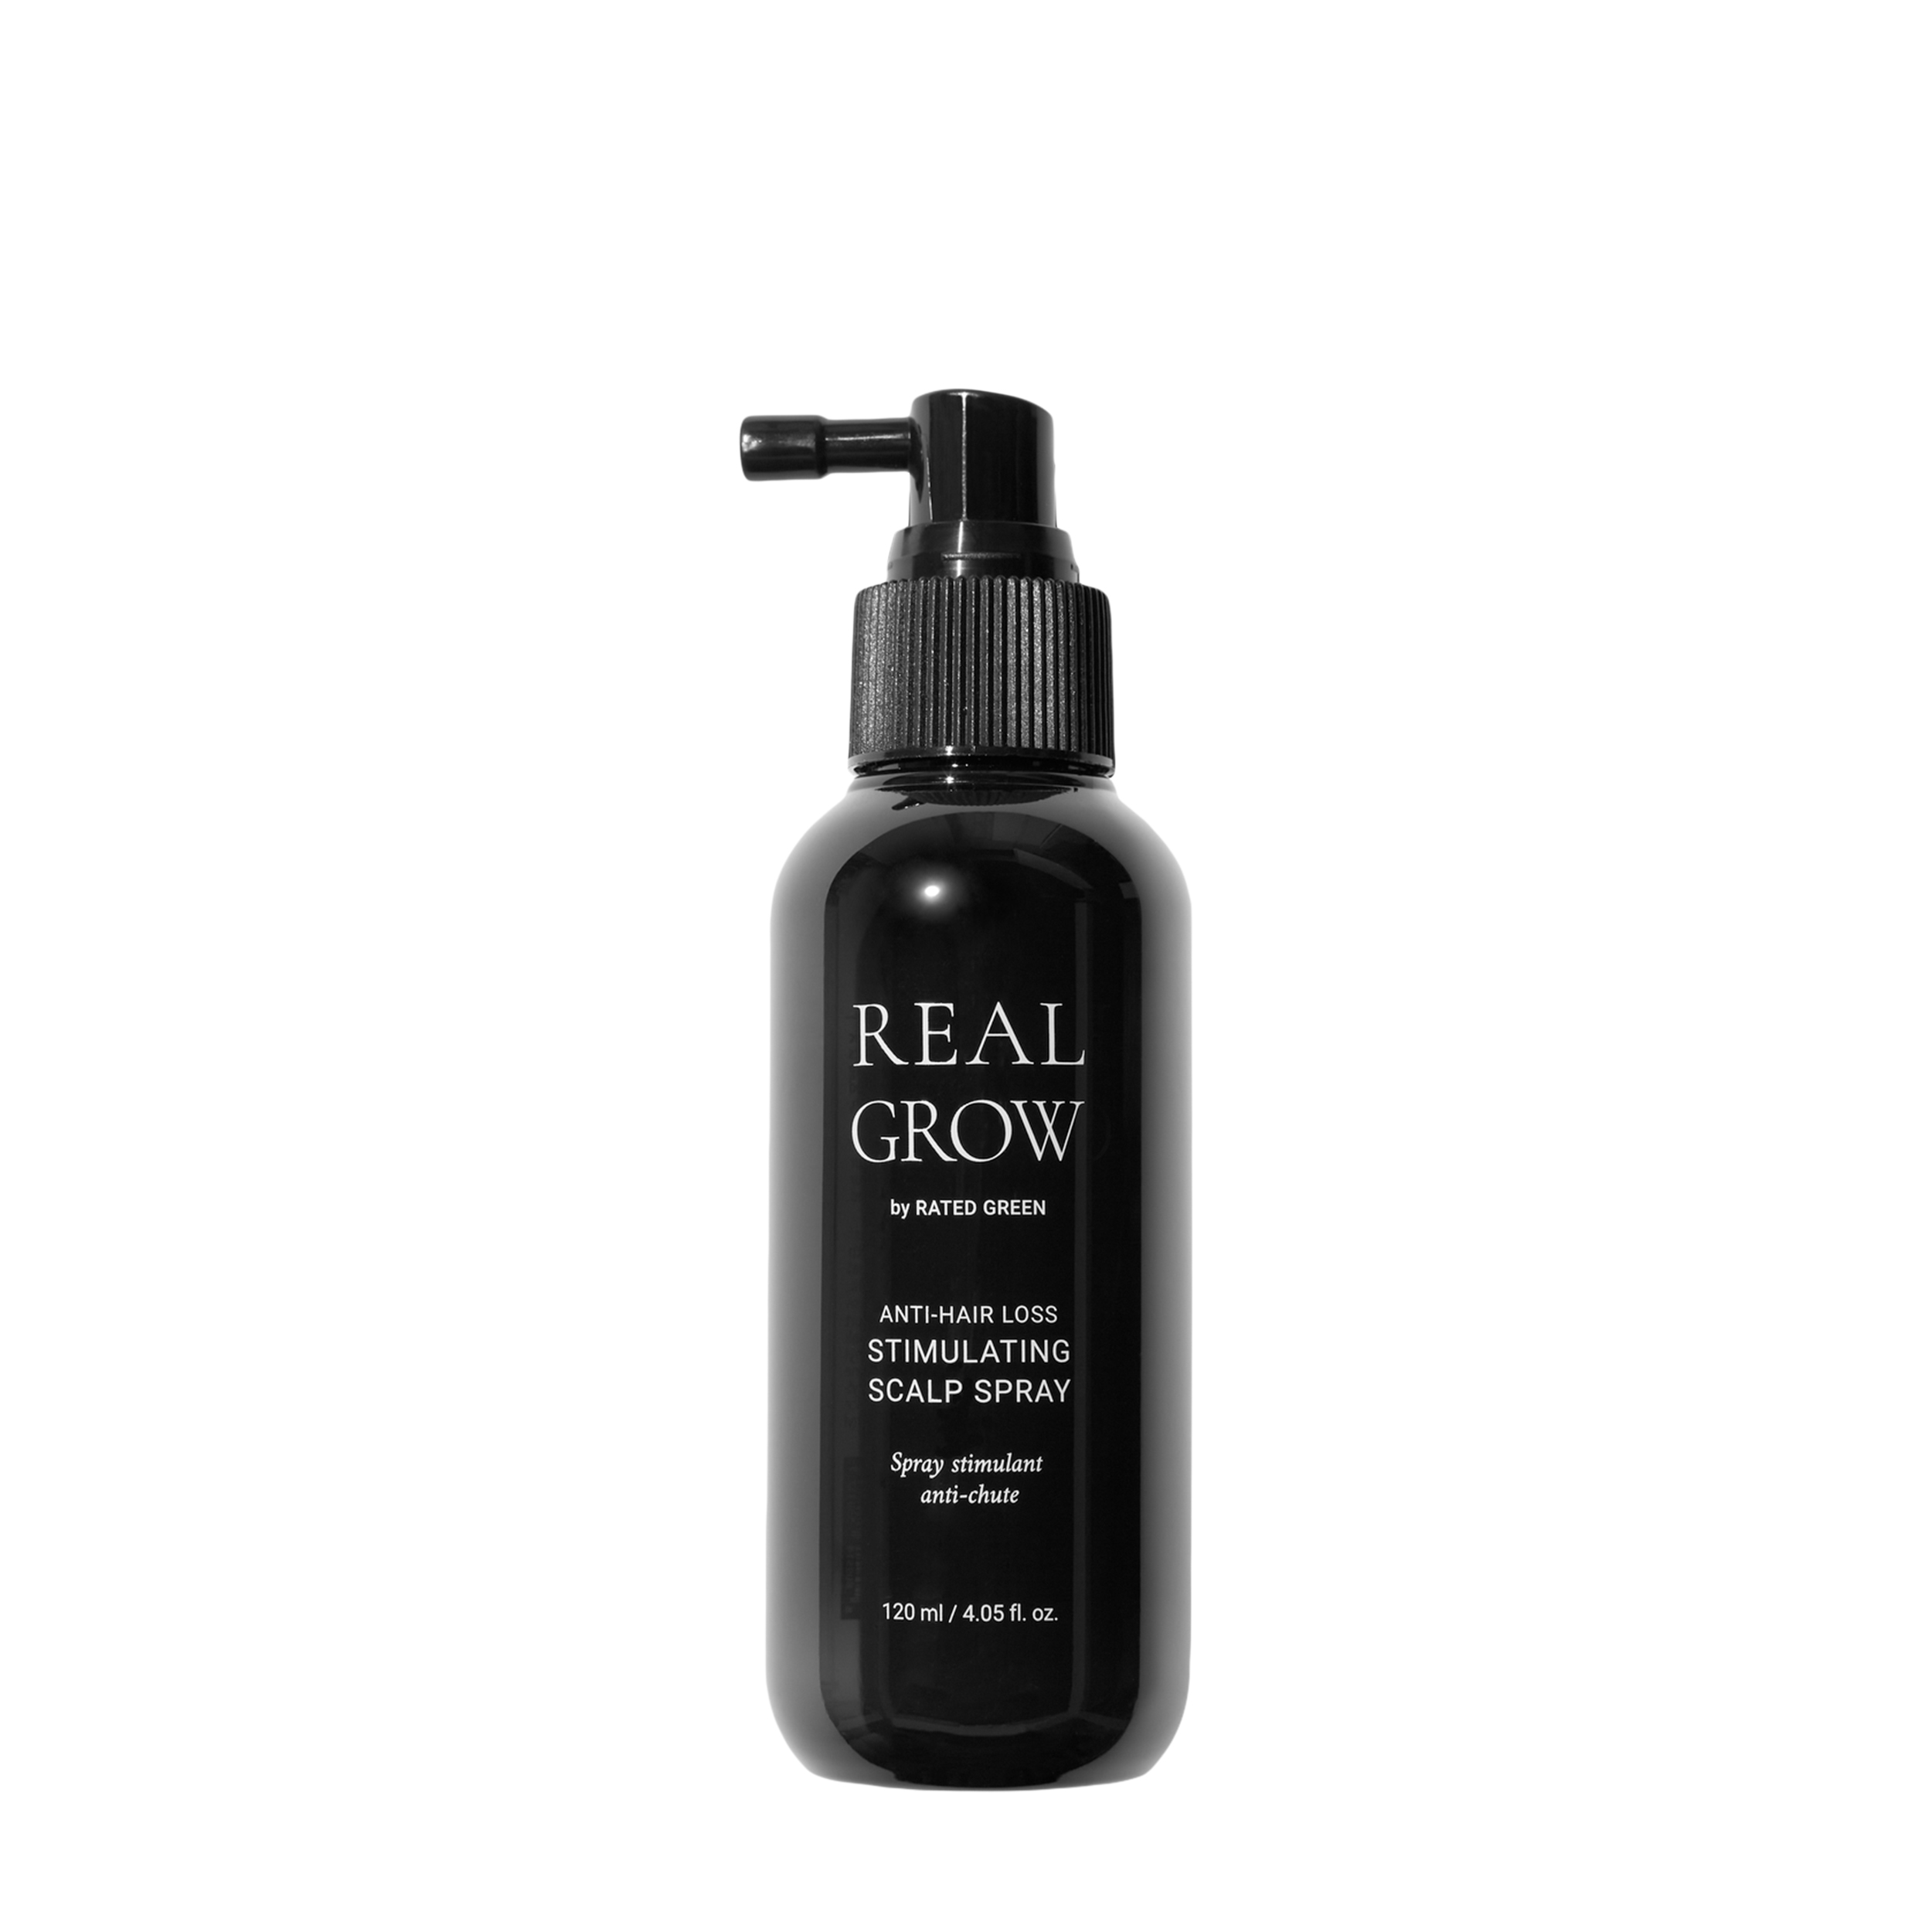 Rated Green Rated Green Спрей для кожи головы против выпадения волос
Real Grow 120мл